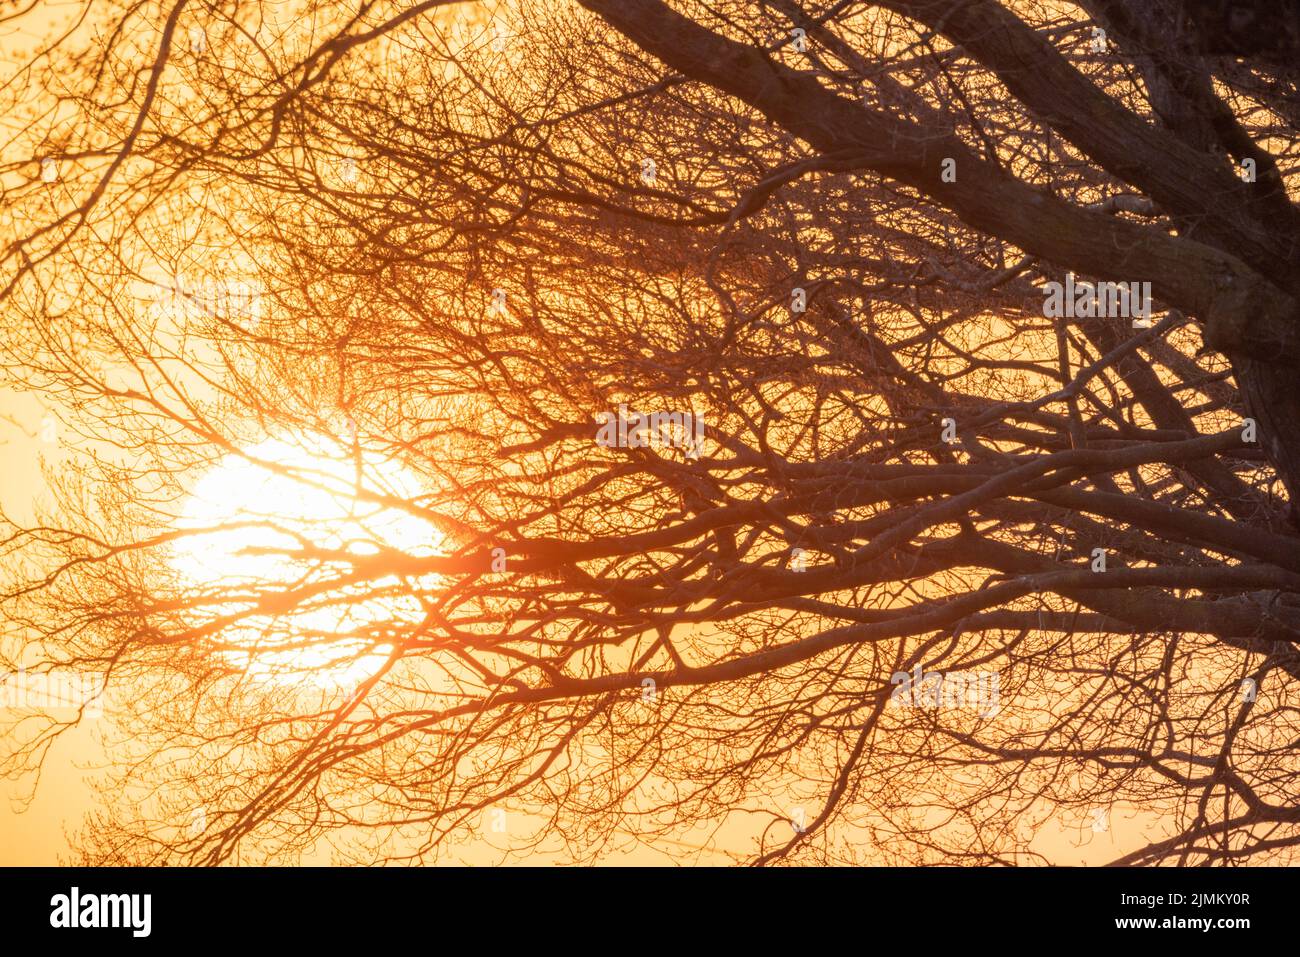 Die untergehende Sonne scheint durch die Bäume im Wald Stockfoto